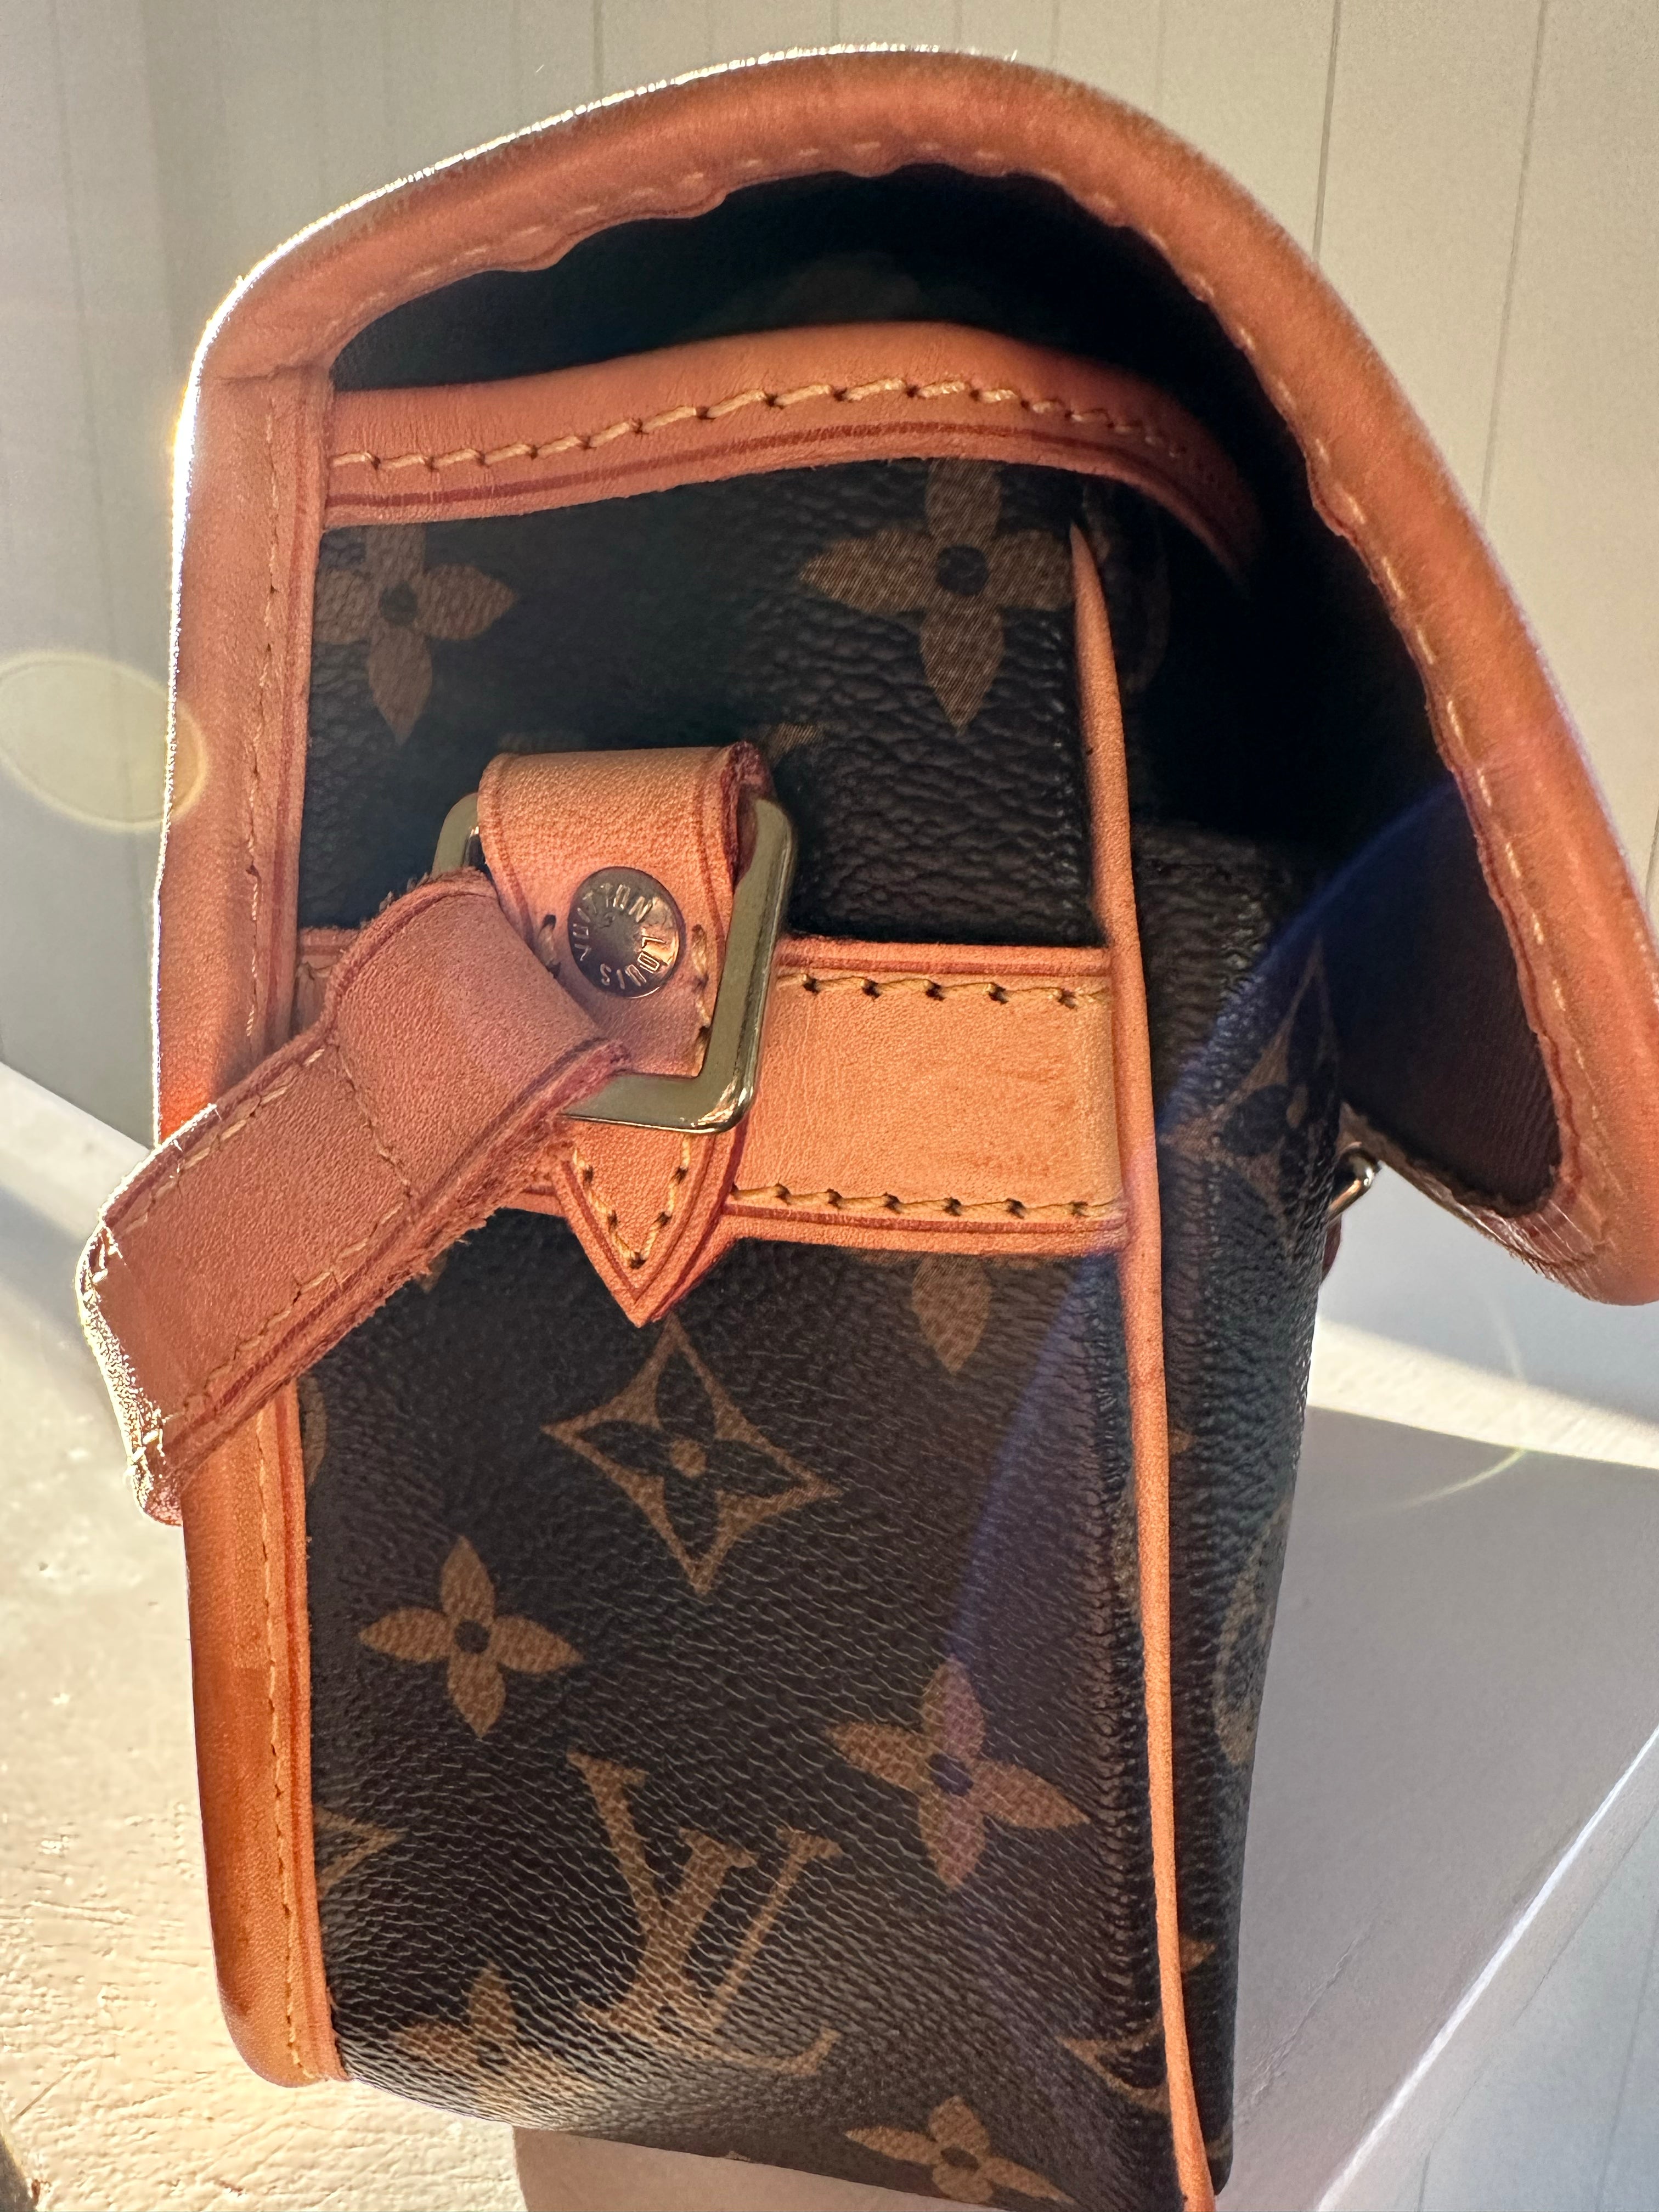 Louis Vuitton Sologne Monogram Canvas Shoulder Bag on SALE